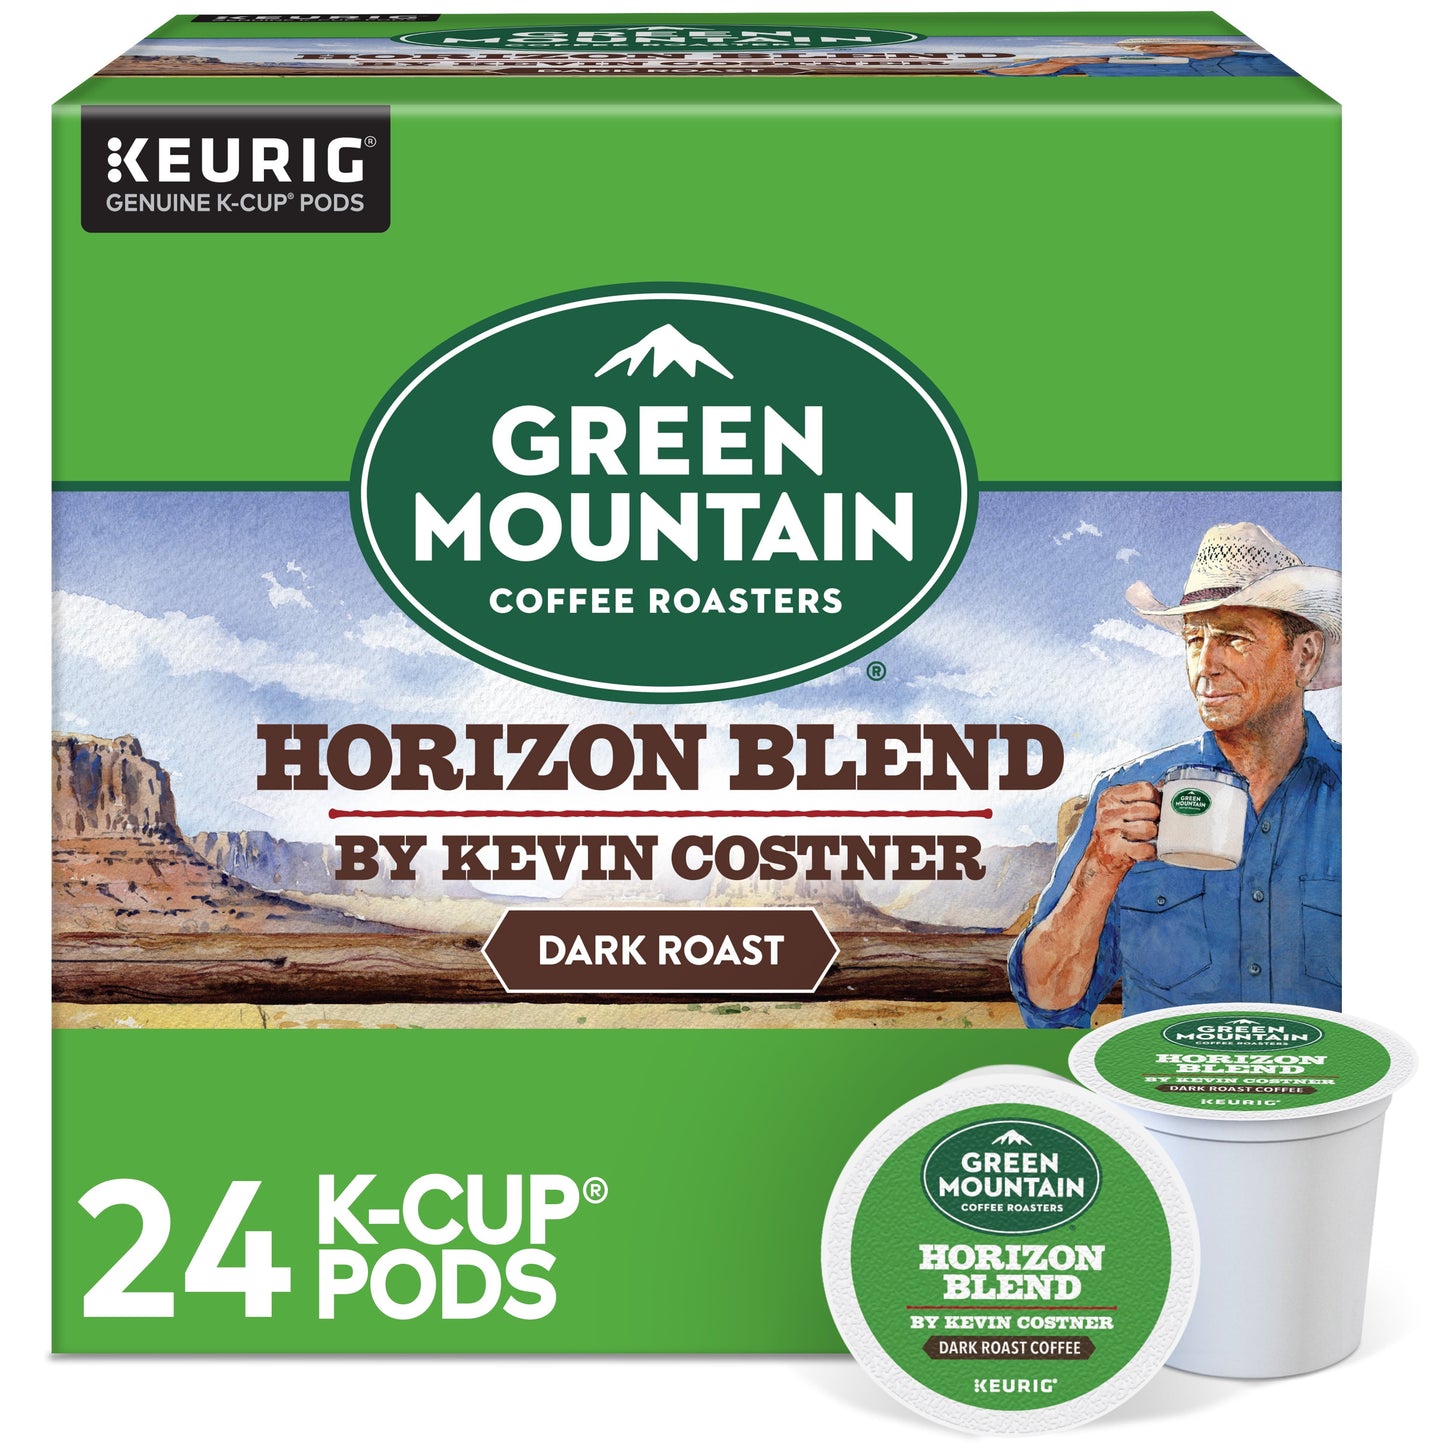 Green Mountain Coffee Roasters, Breakfast Blend Light Roast K-Cup Coff